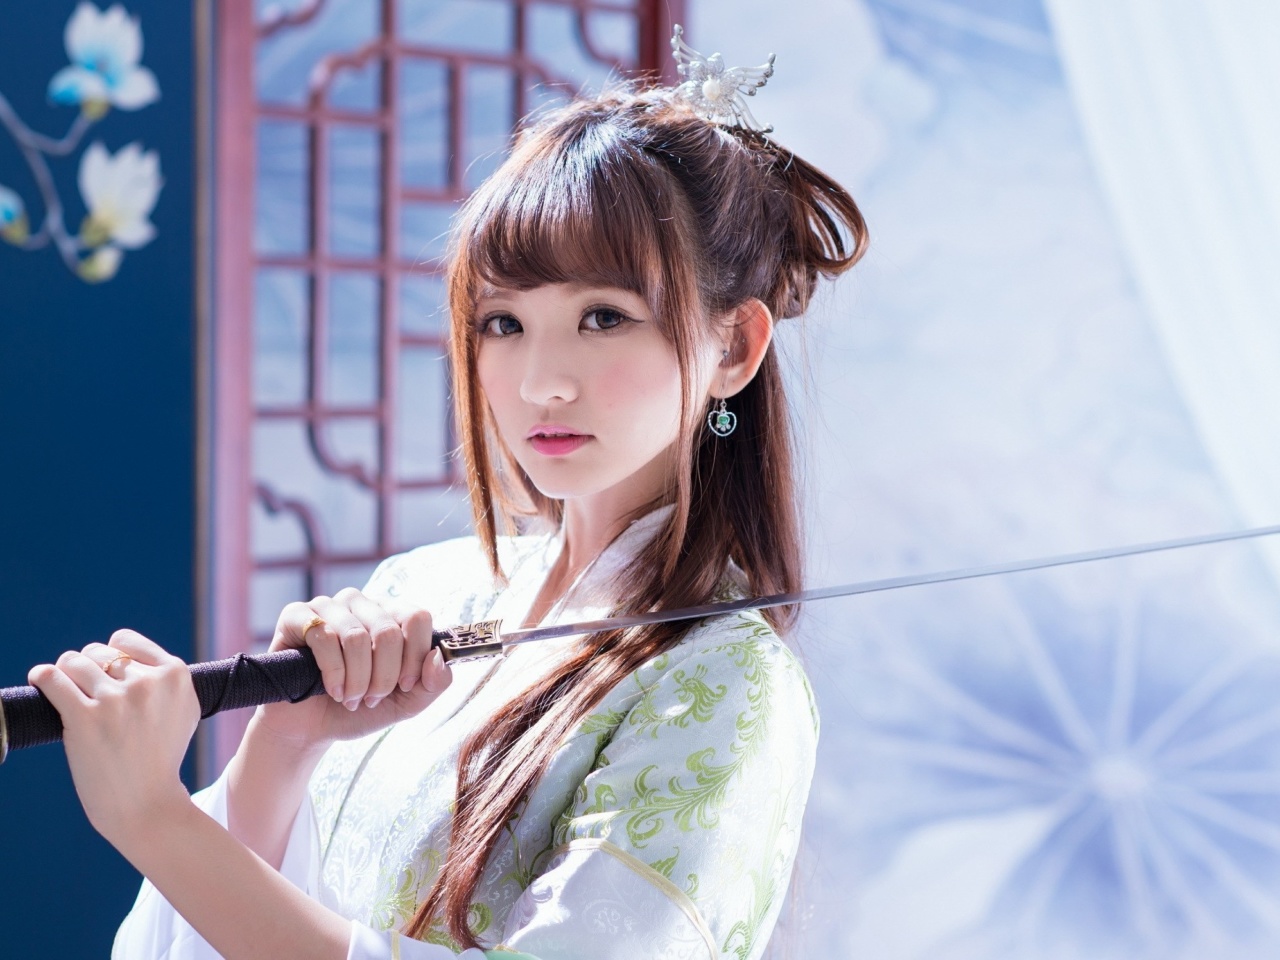 Samurai Girl with Katana wallpaper 1280x960